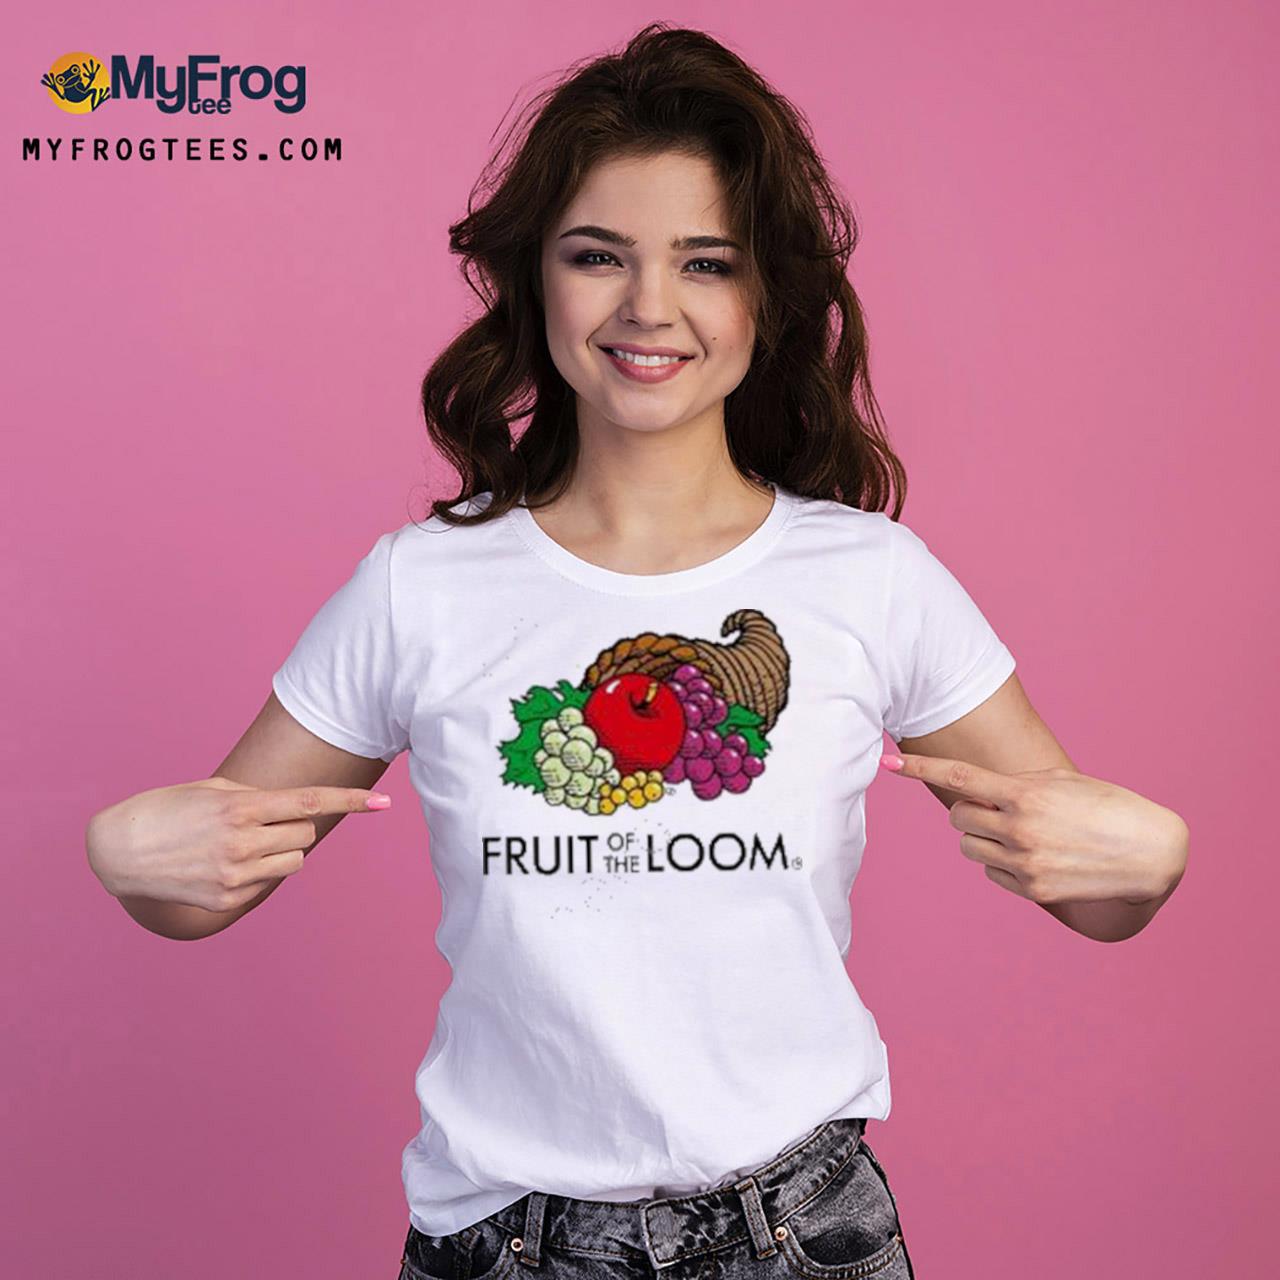 https://images.myfrogtees.com/2023/03/fruit-of-the-loom-t-shirt-Ladies-Tee.jpg